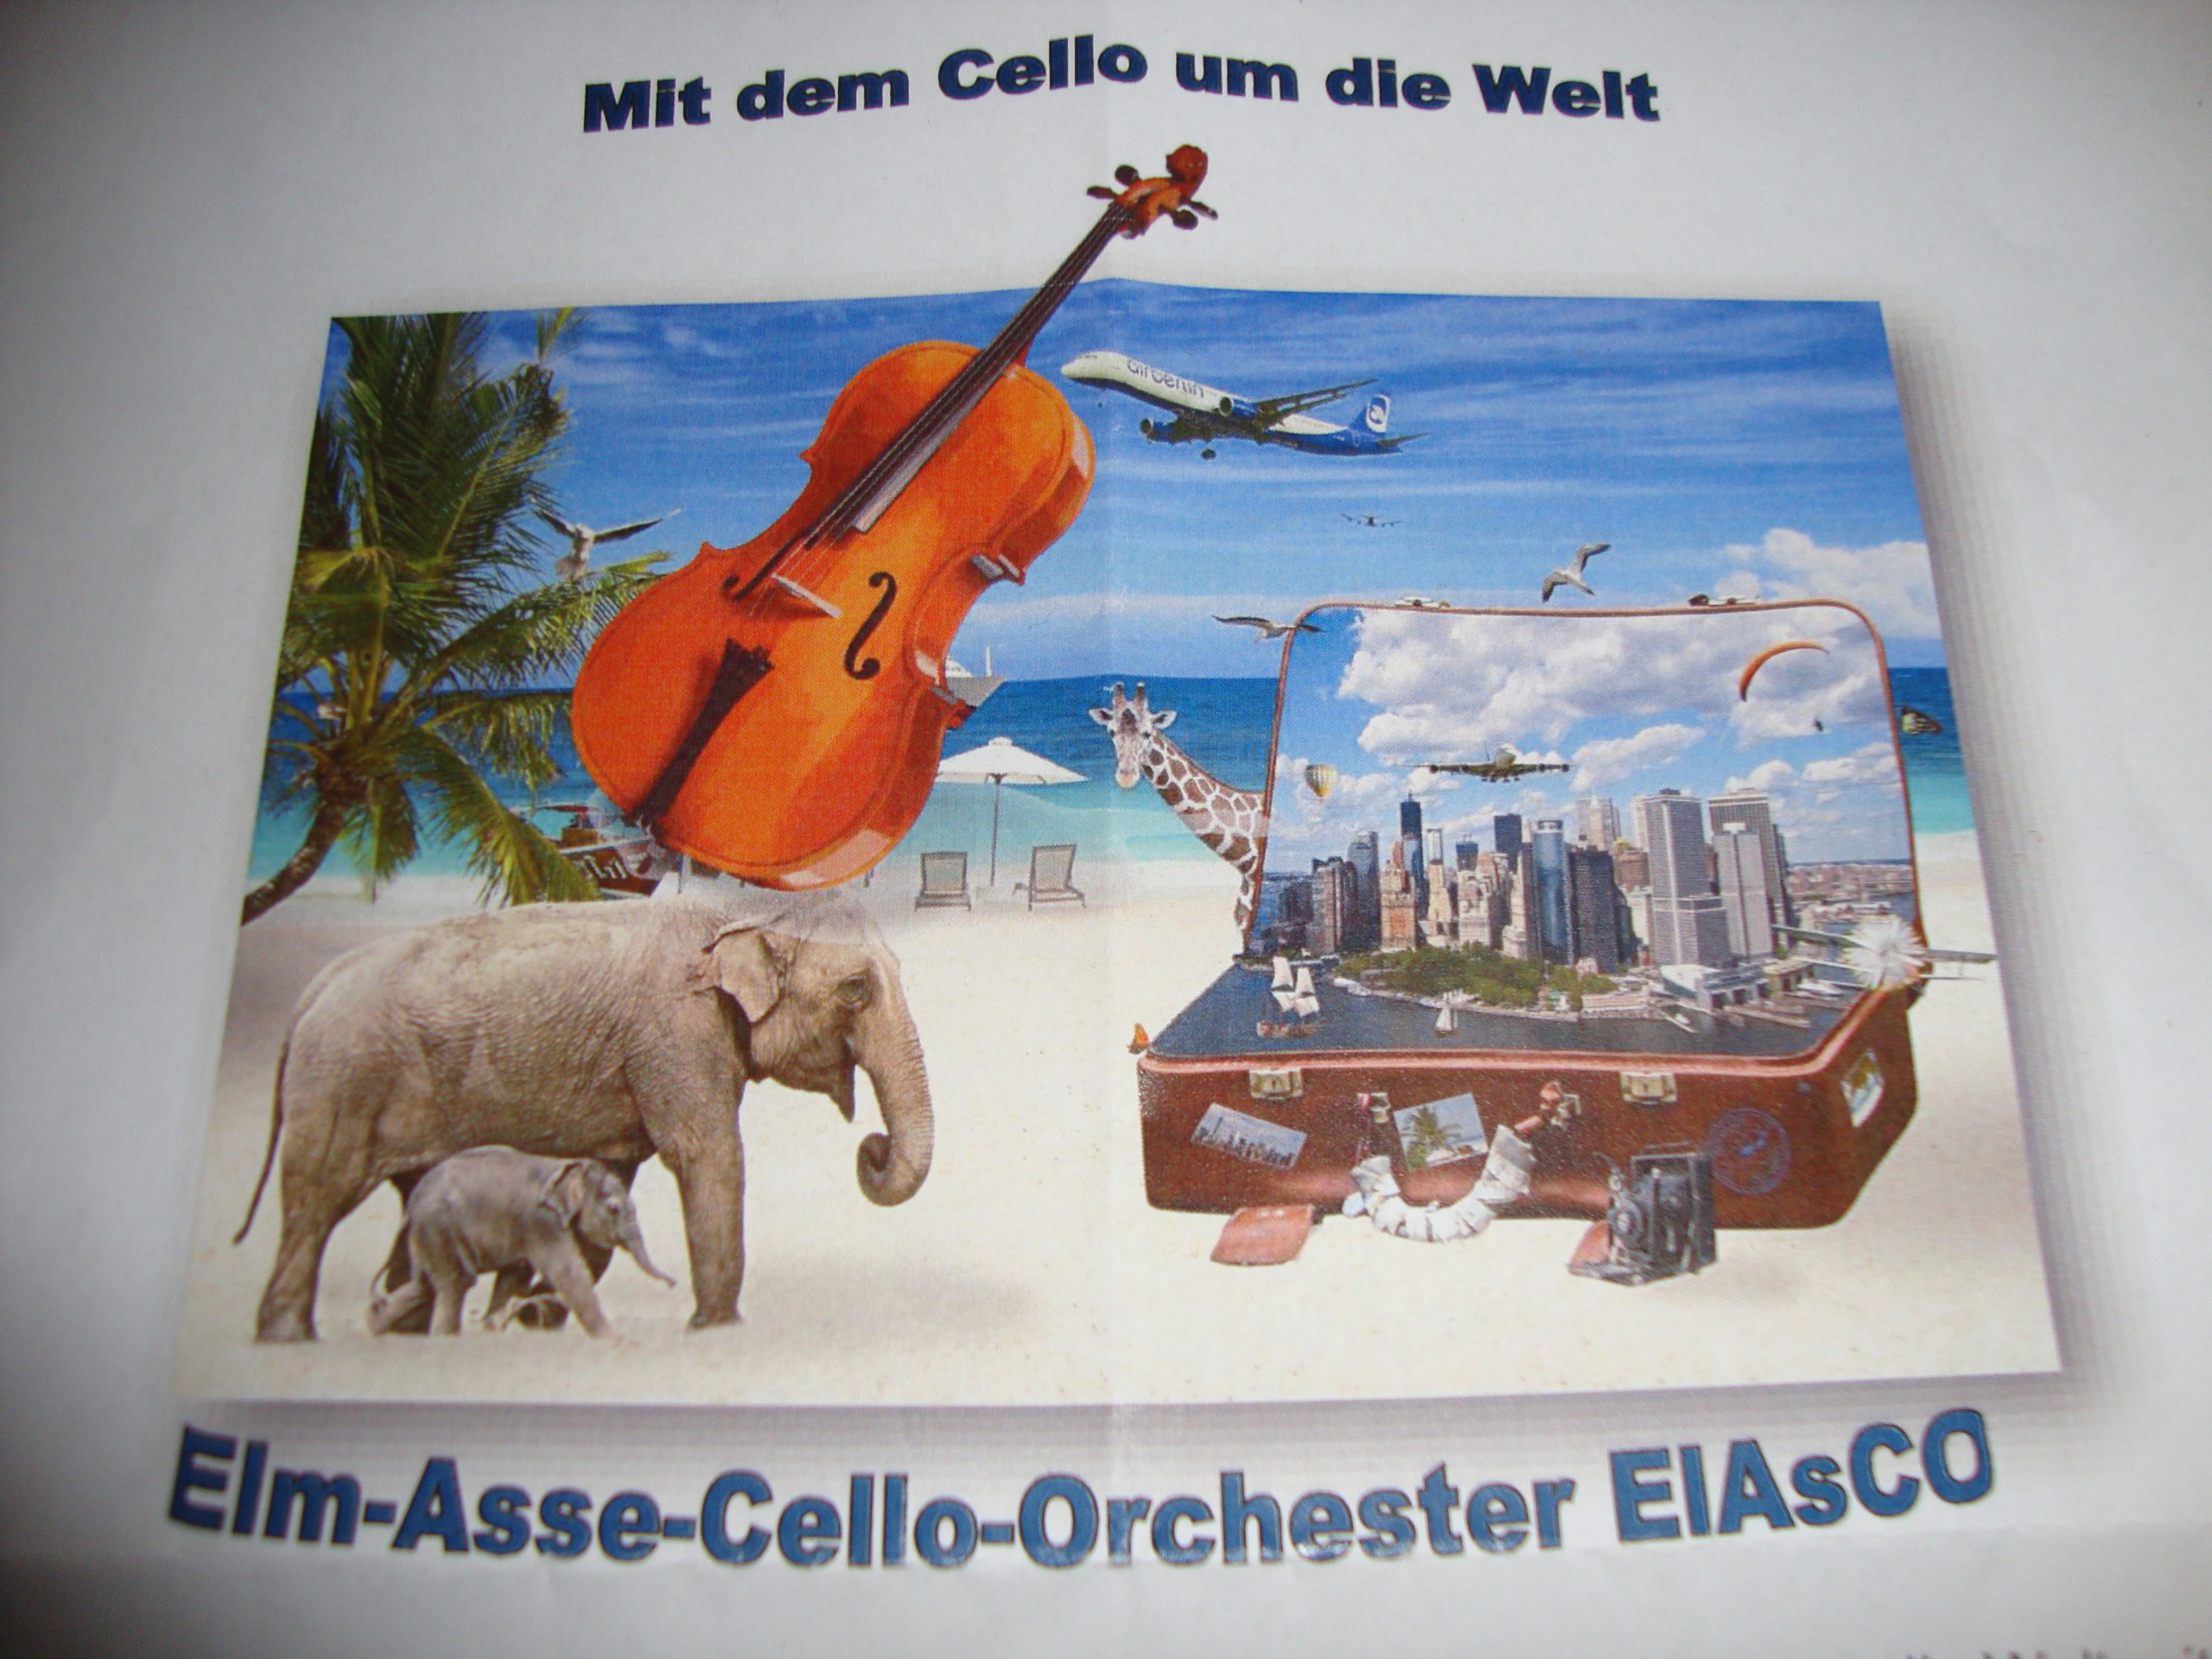 Elm-Asse-Cello-Orchester auf musikalischer Weltreise